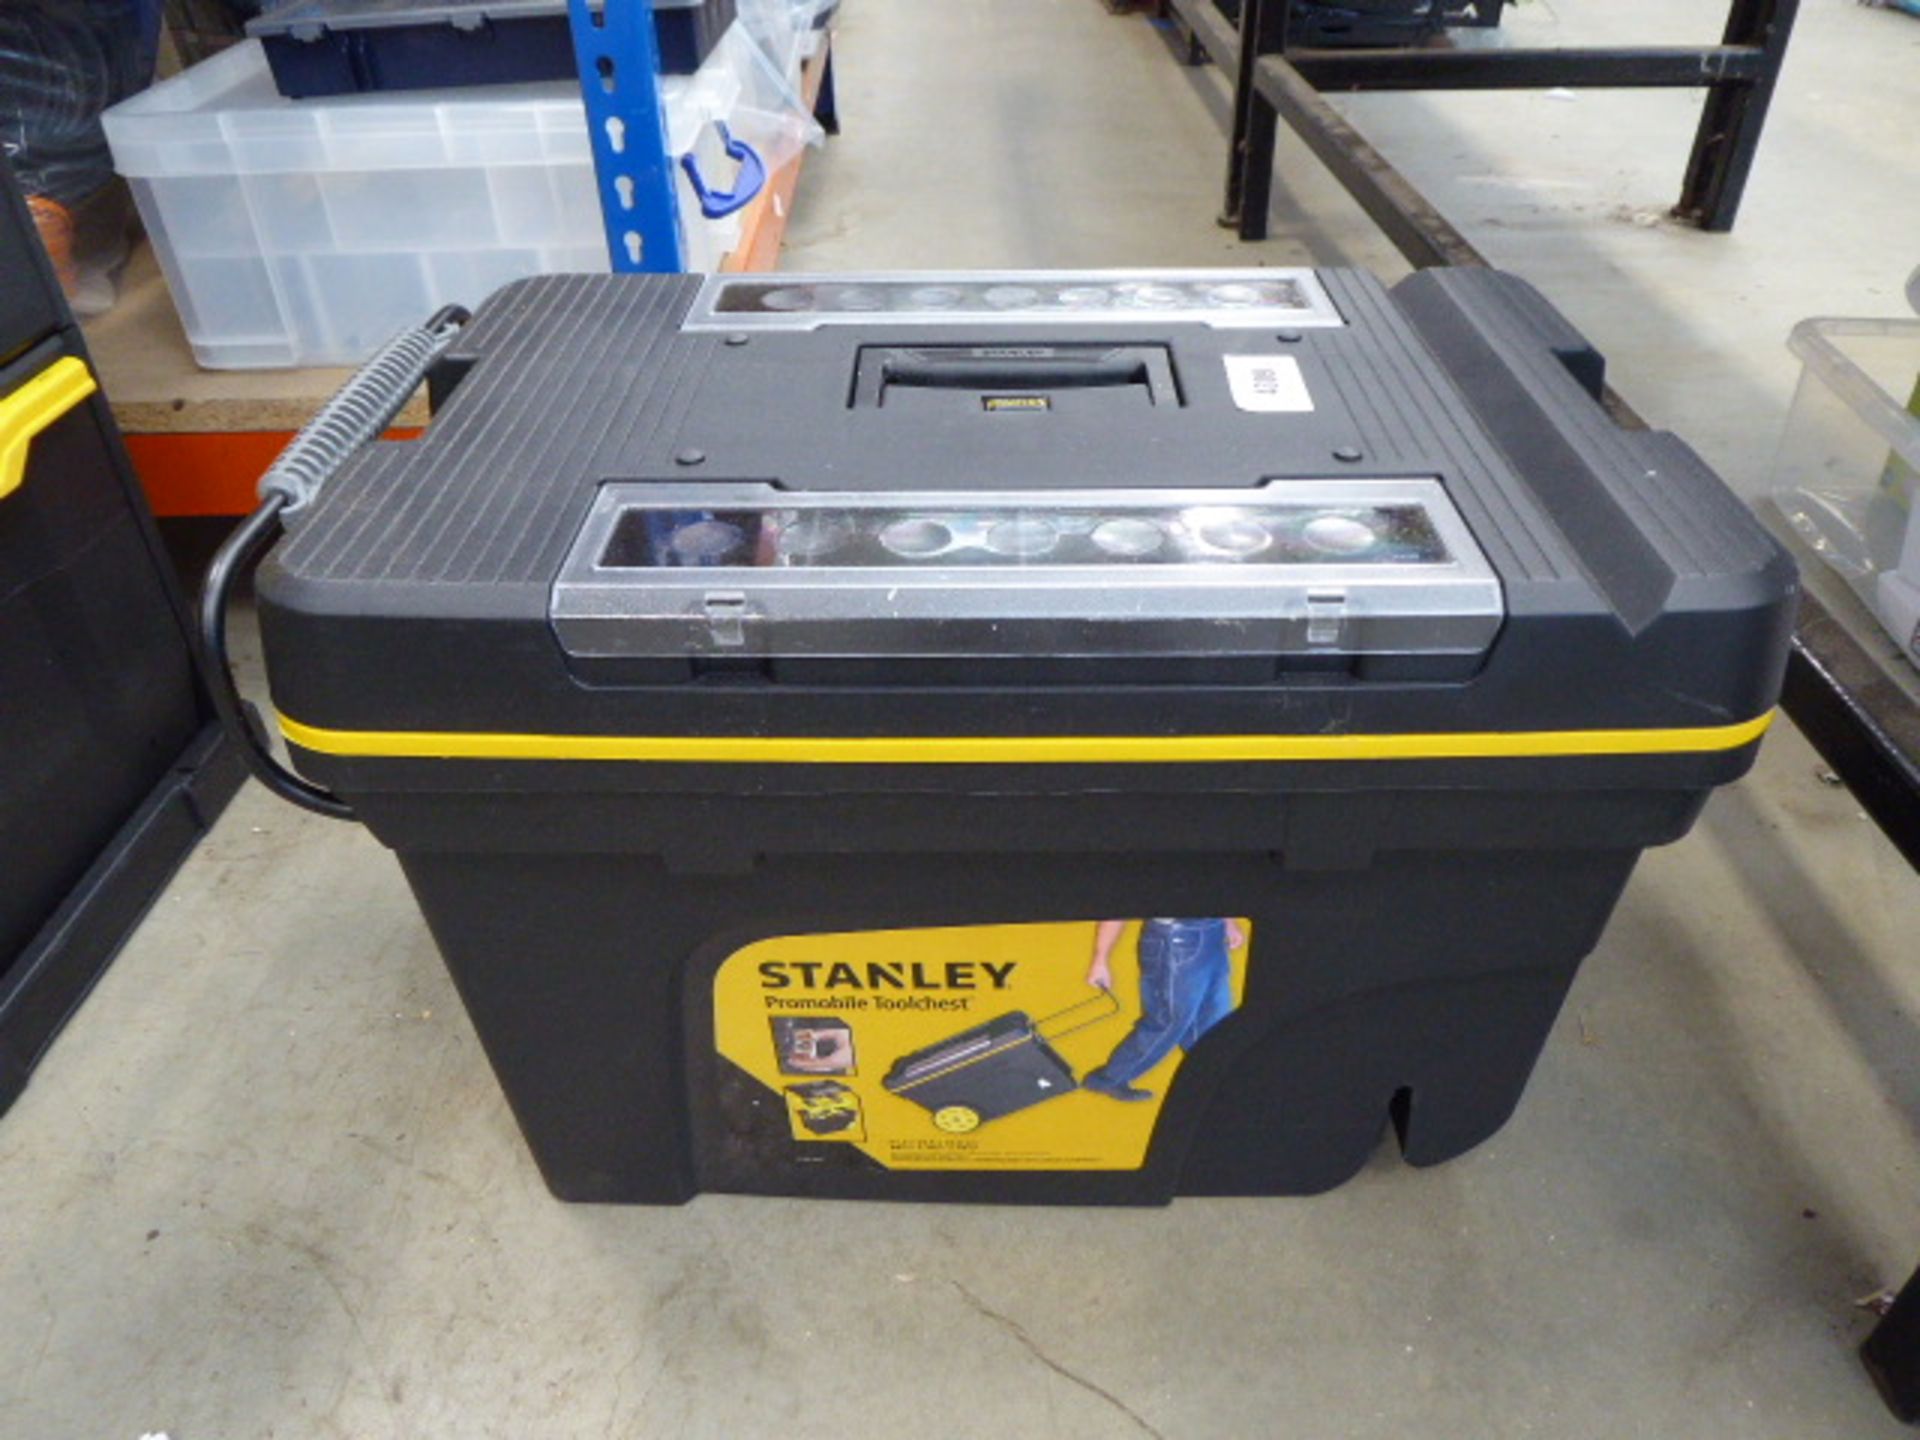 Stanley wheel-along toolbox (minus wheels)